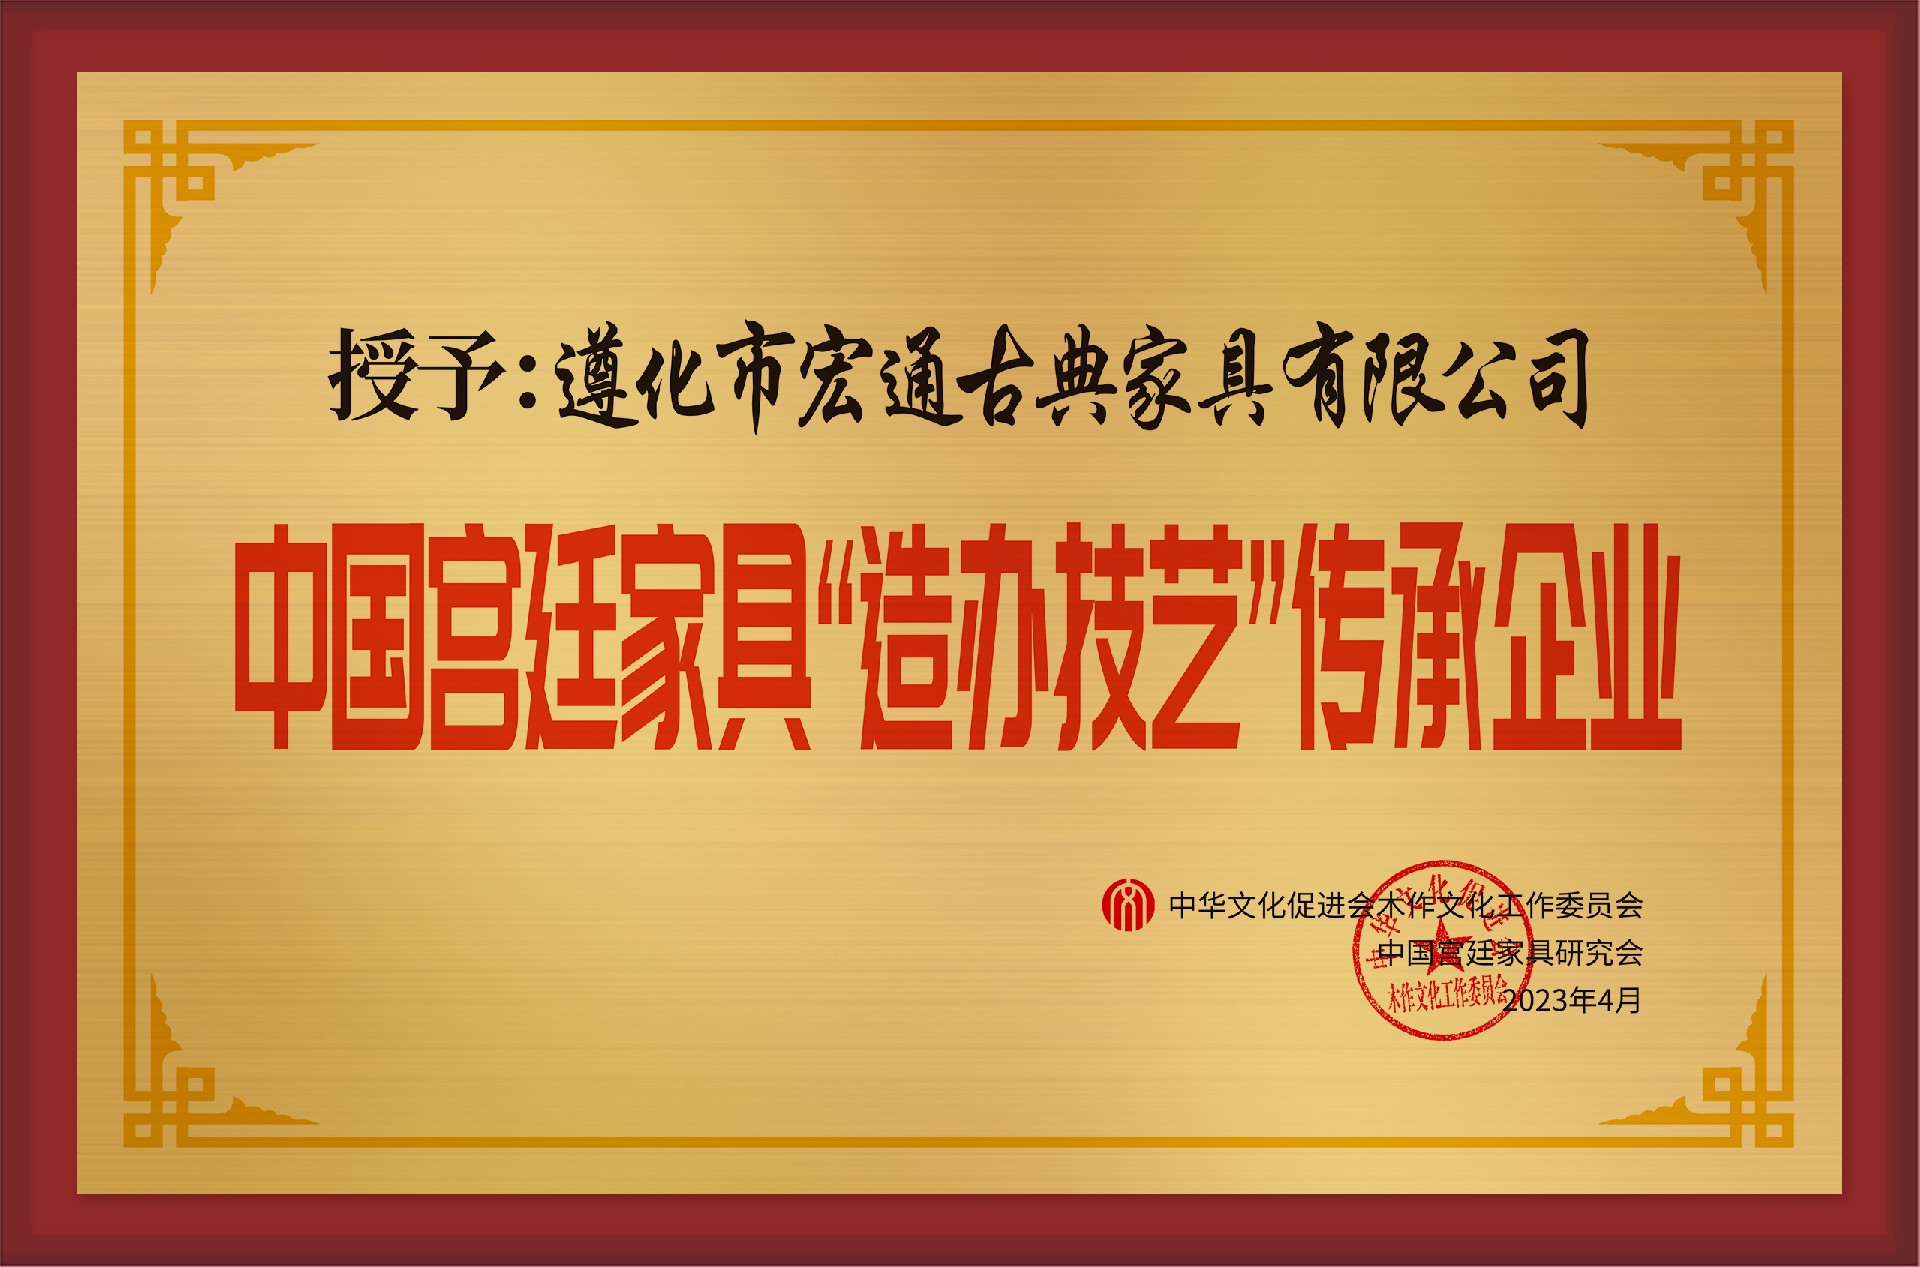 中国宫廷家具“造办技艺”传承企业拉丝银加框荣誉.jpg